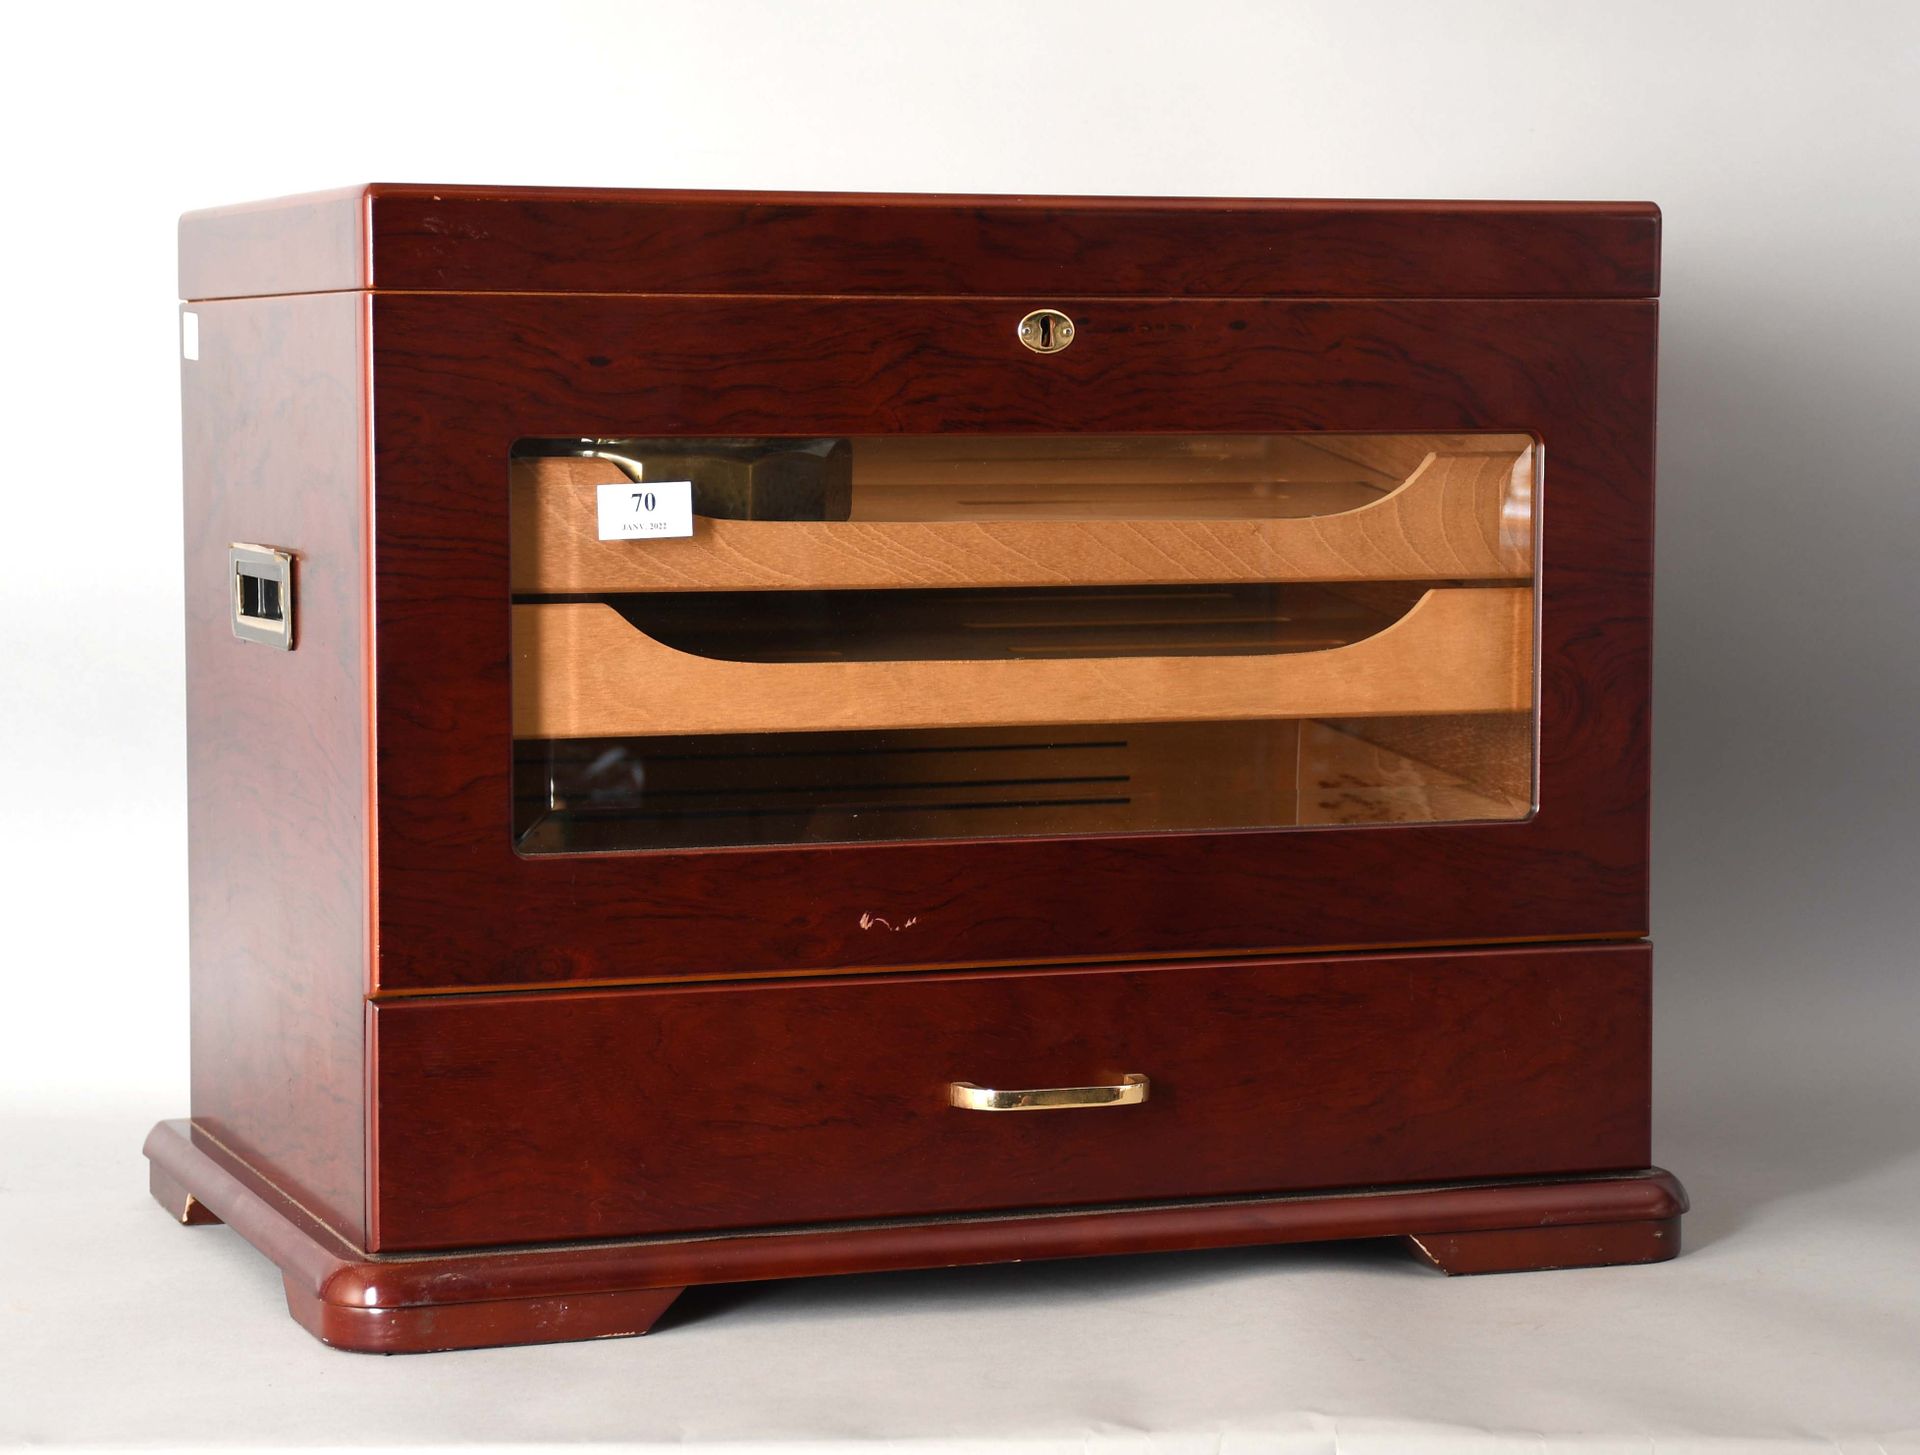 Null 重要的贵重木材玻璃雪茄柜

长度：56厘米。高度：45厘米。